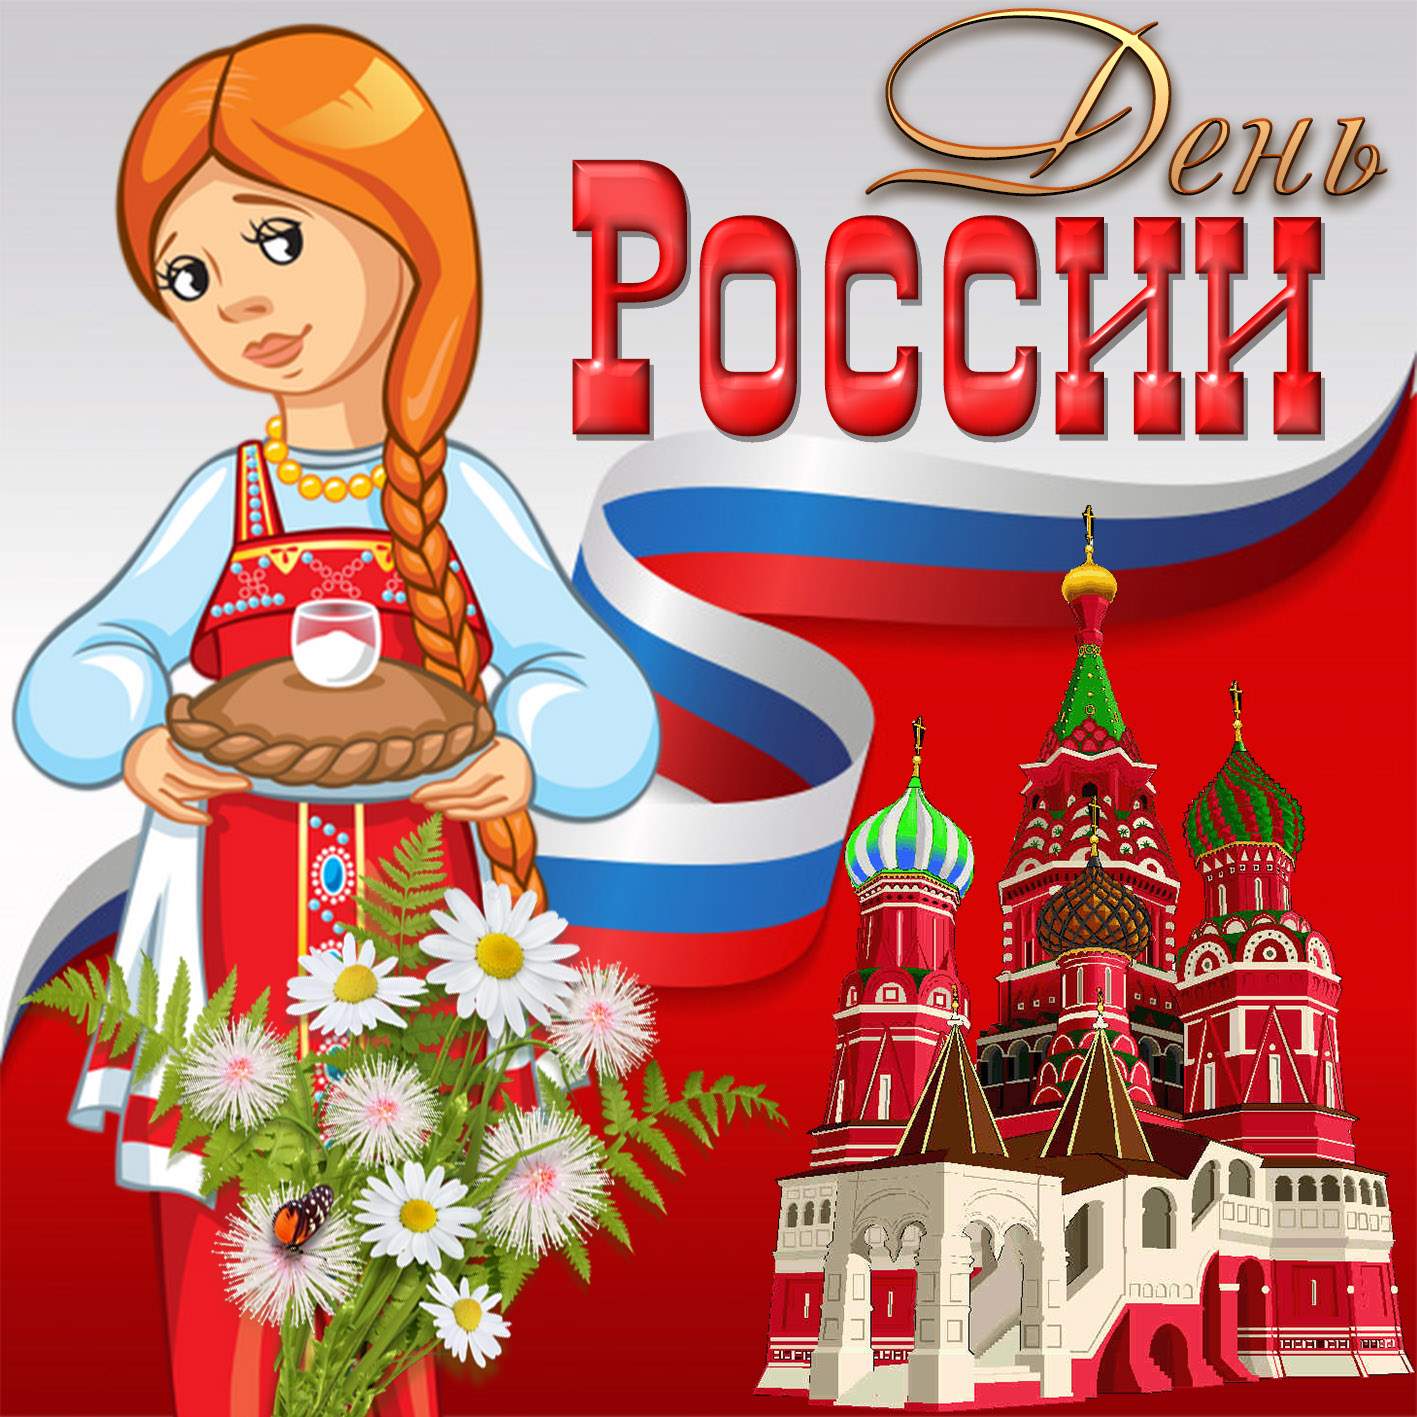 Открытка - девушка с хлебом и солью поздравляет с Днём России